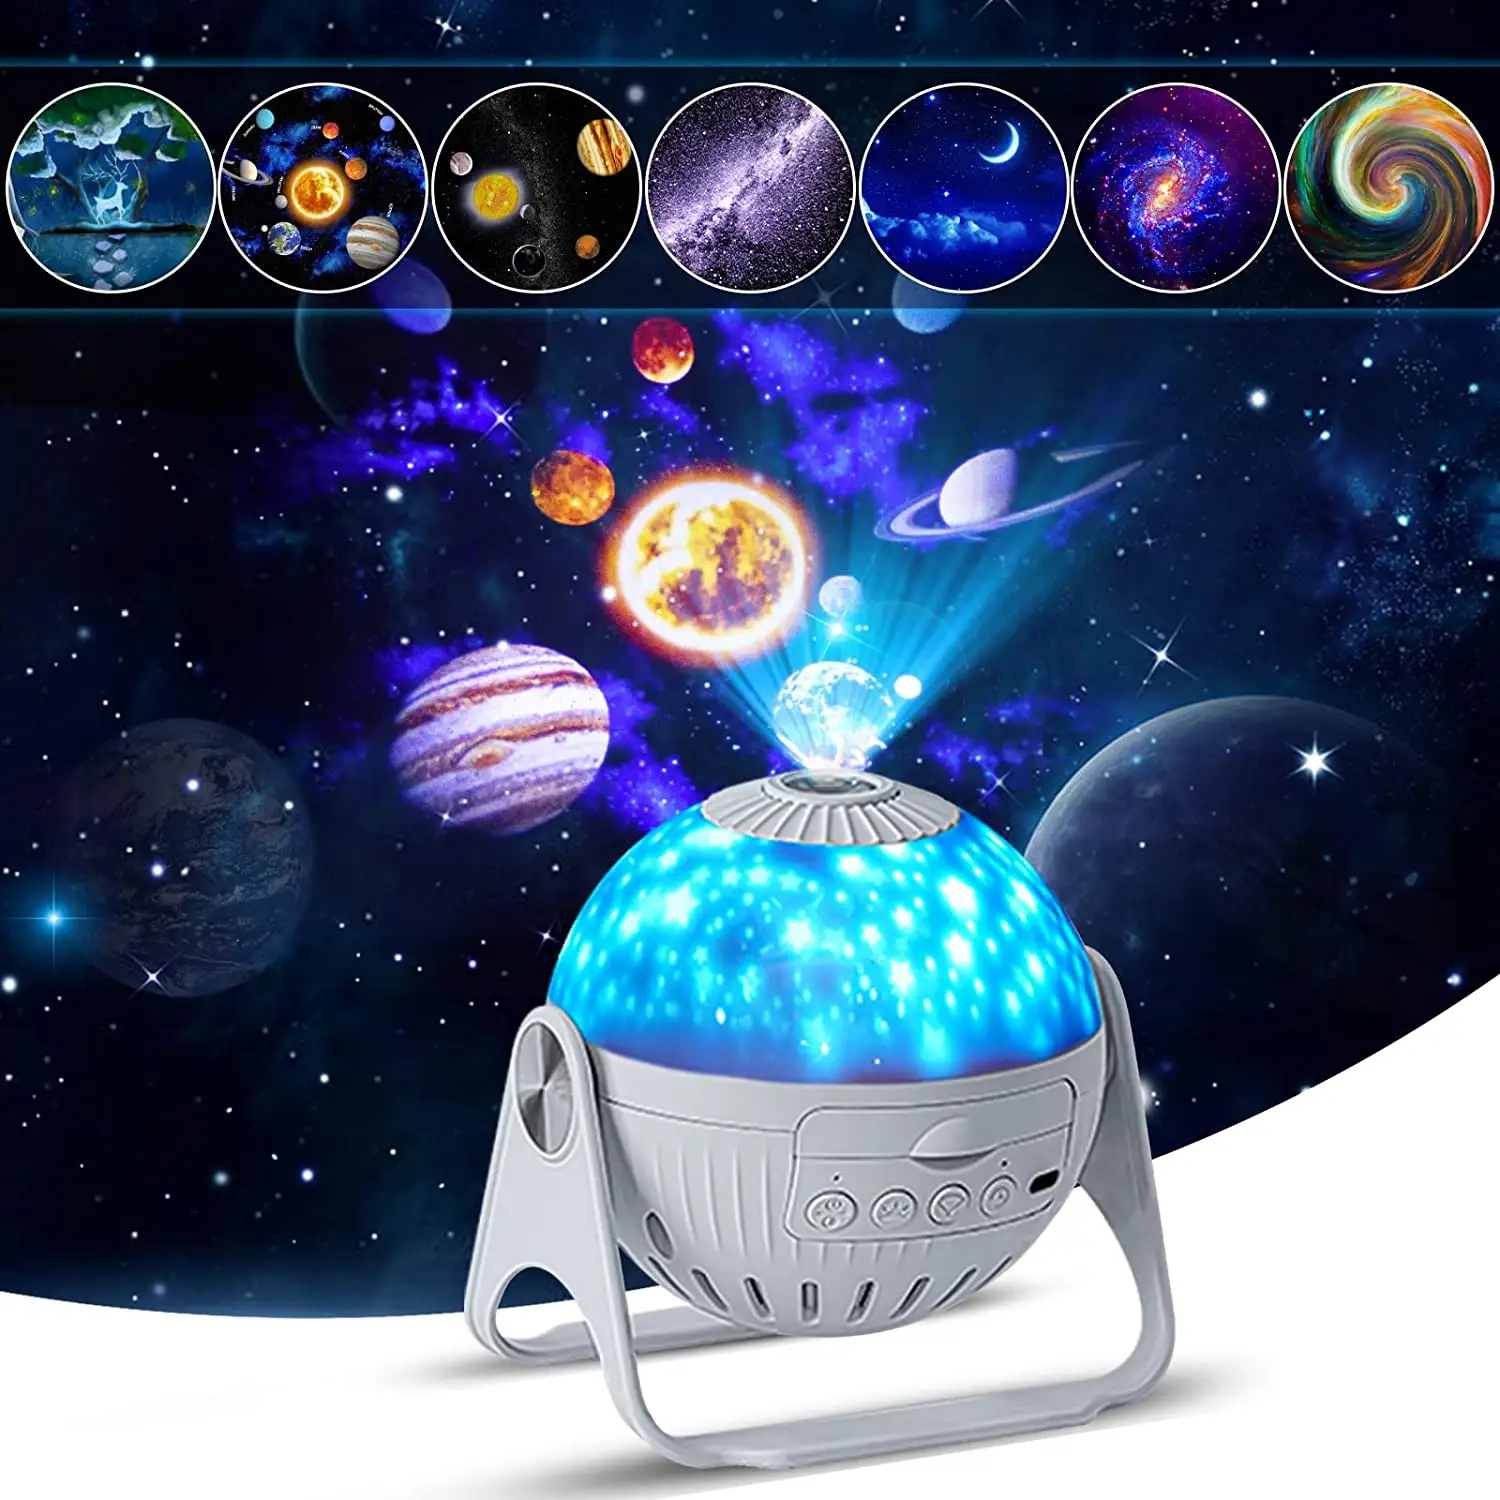 갤럭시 프로젝터 360 회전 플라네타륨 별이 빛나는 하늘 프로젝터 램프 아이 침실 방 장식 야간 조명 LED 스타 야간 조명